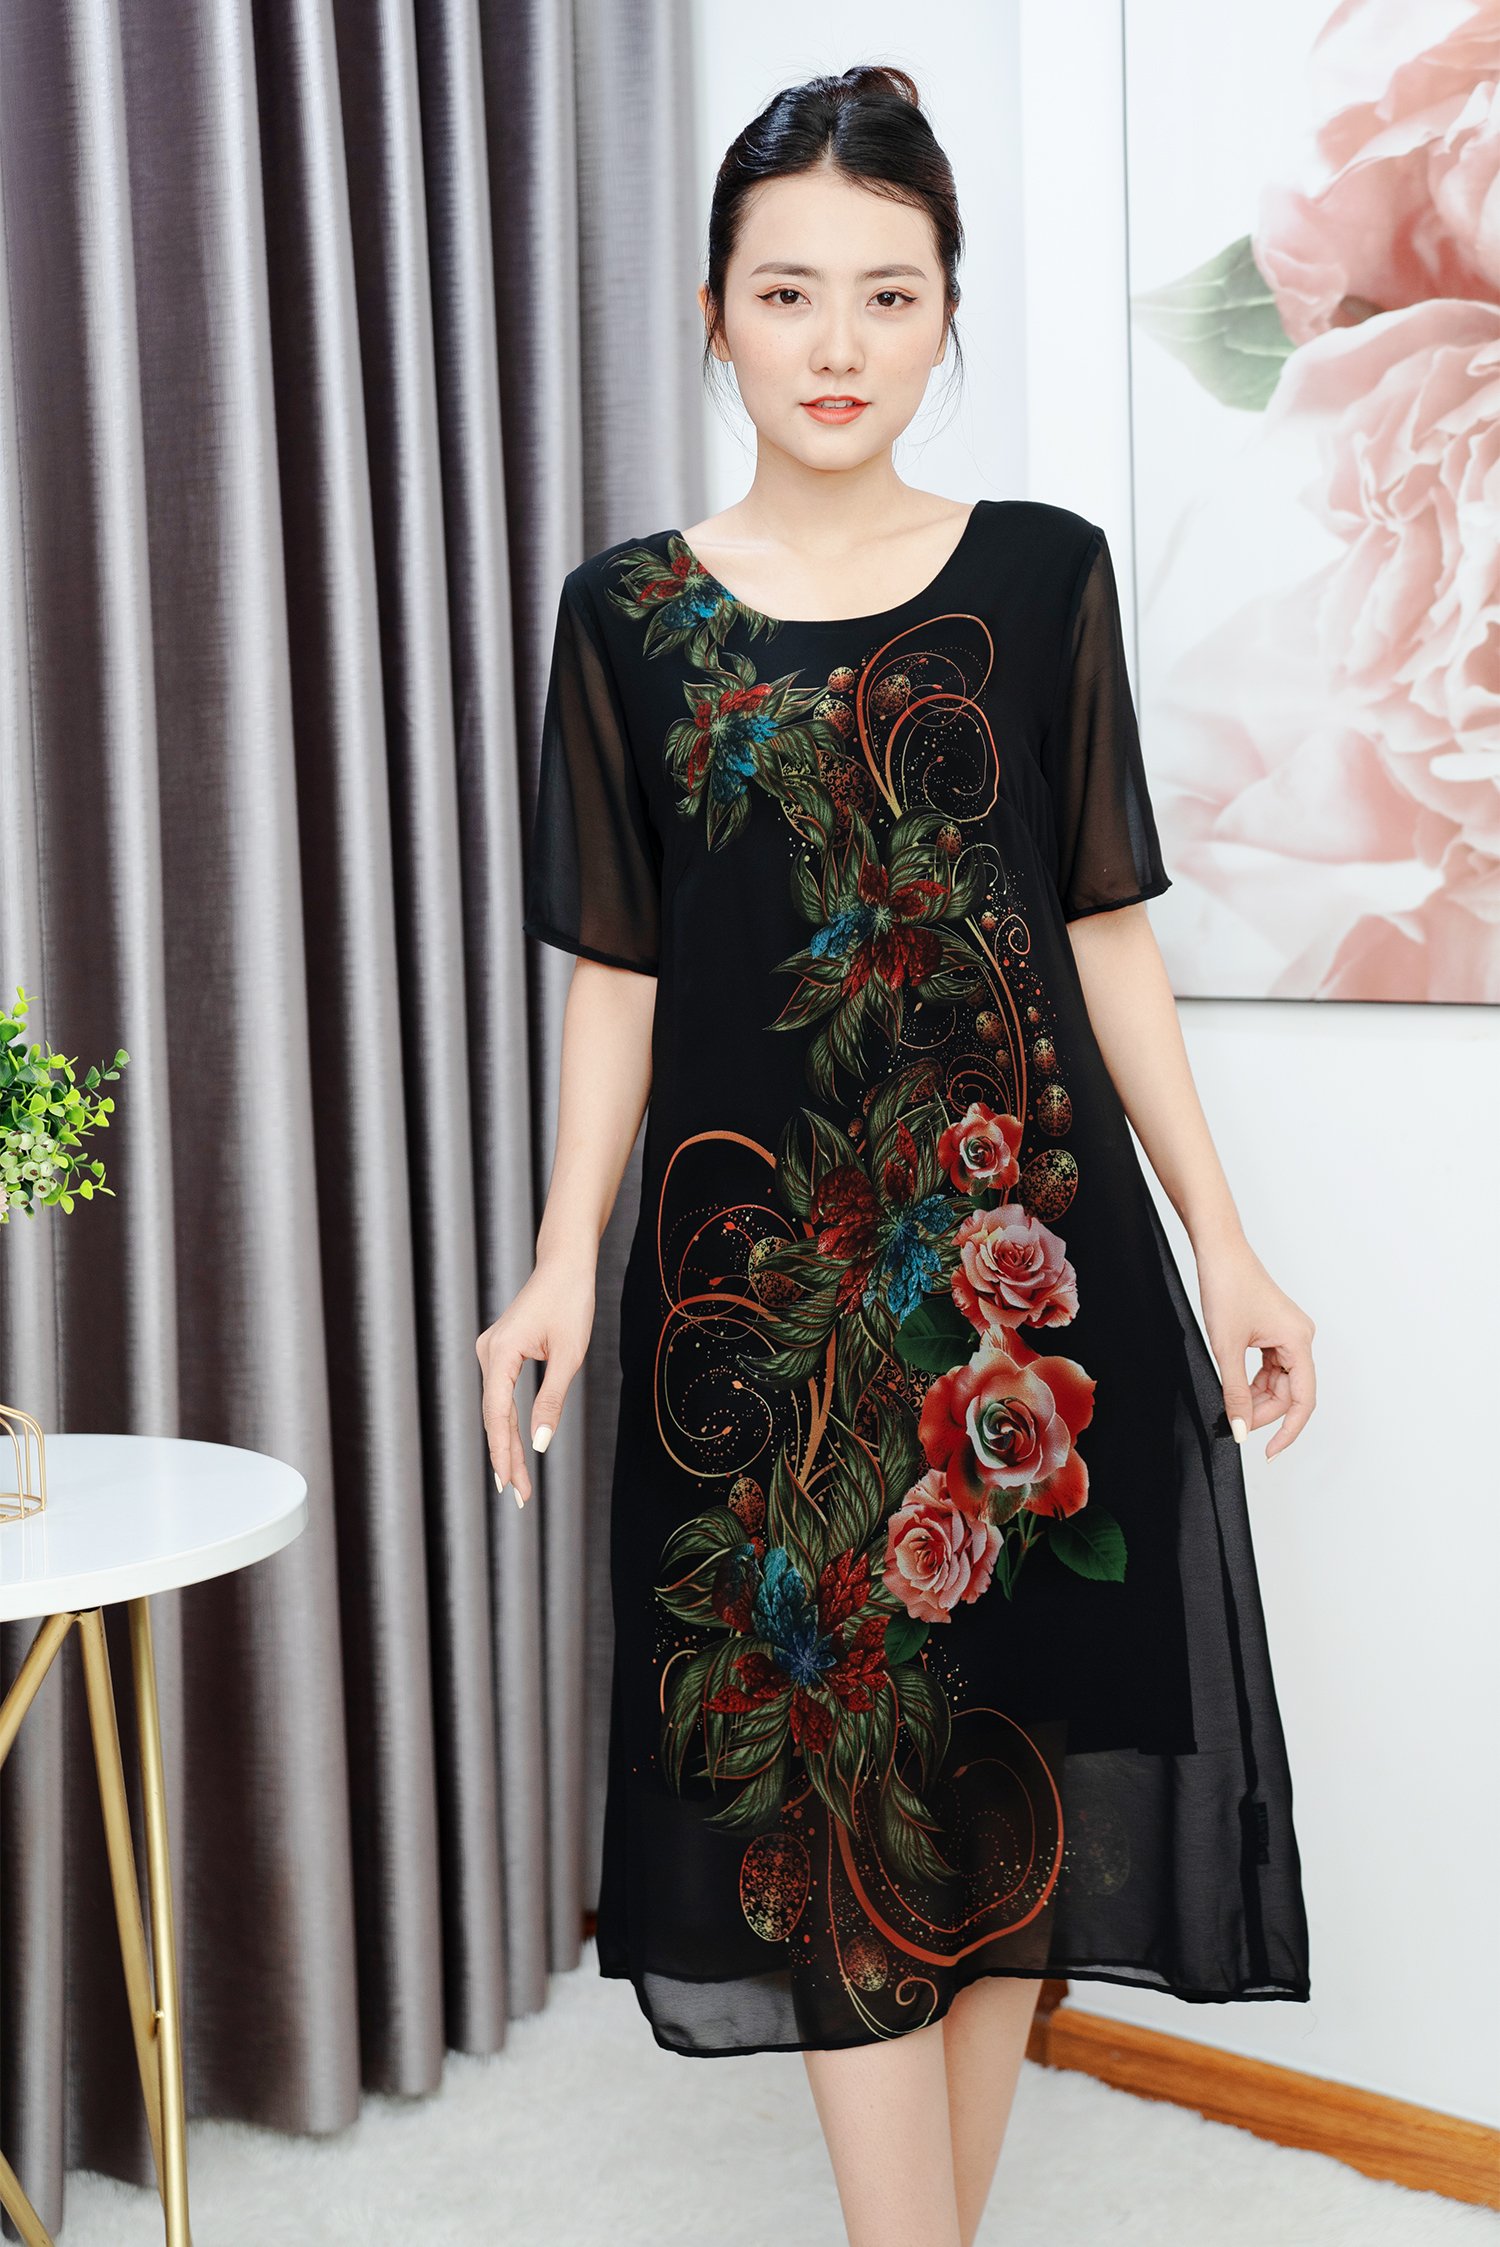 Mới) Mã C0961 Giá 580K: Váy Đầm Liền Thân Nữ Shdon Big Size Ngoại Cỡ Hàng  Mùa Hè Trung Niên Họa Tiết Hoa Thời Trang Nữ Chất Liệu Vải Voan G01, (Miễn